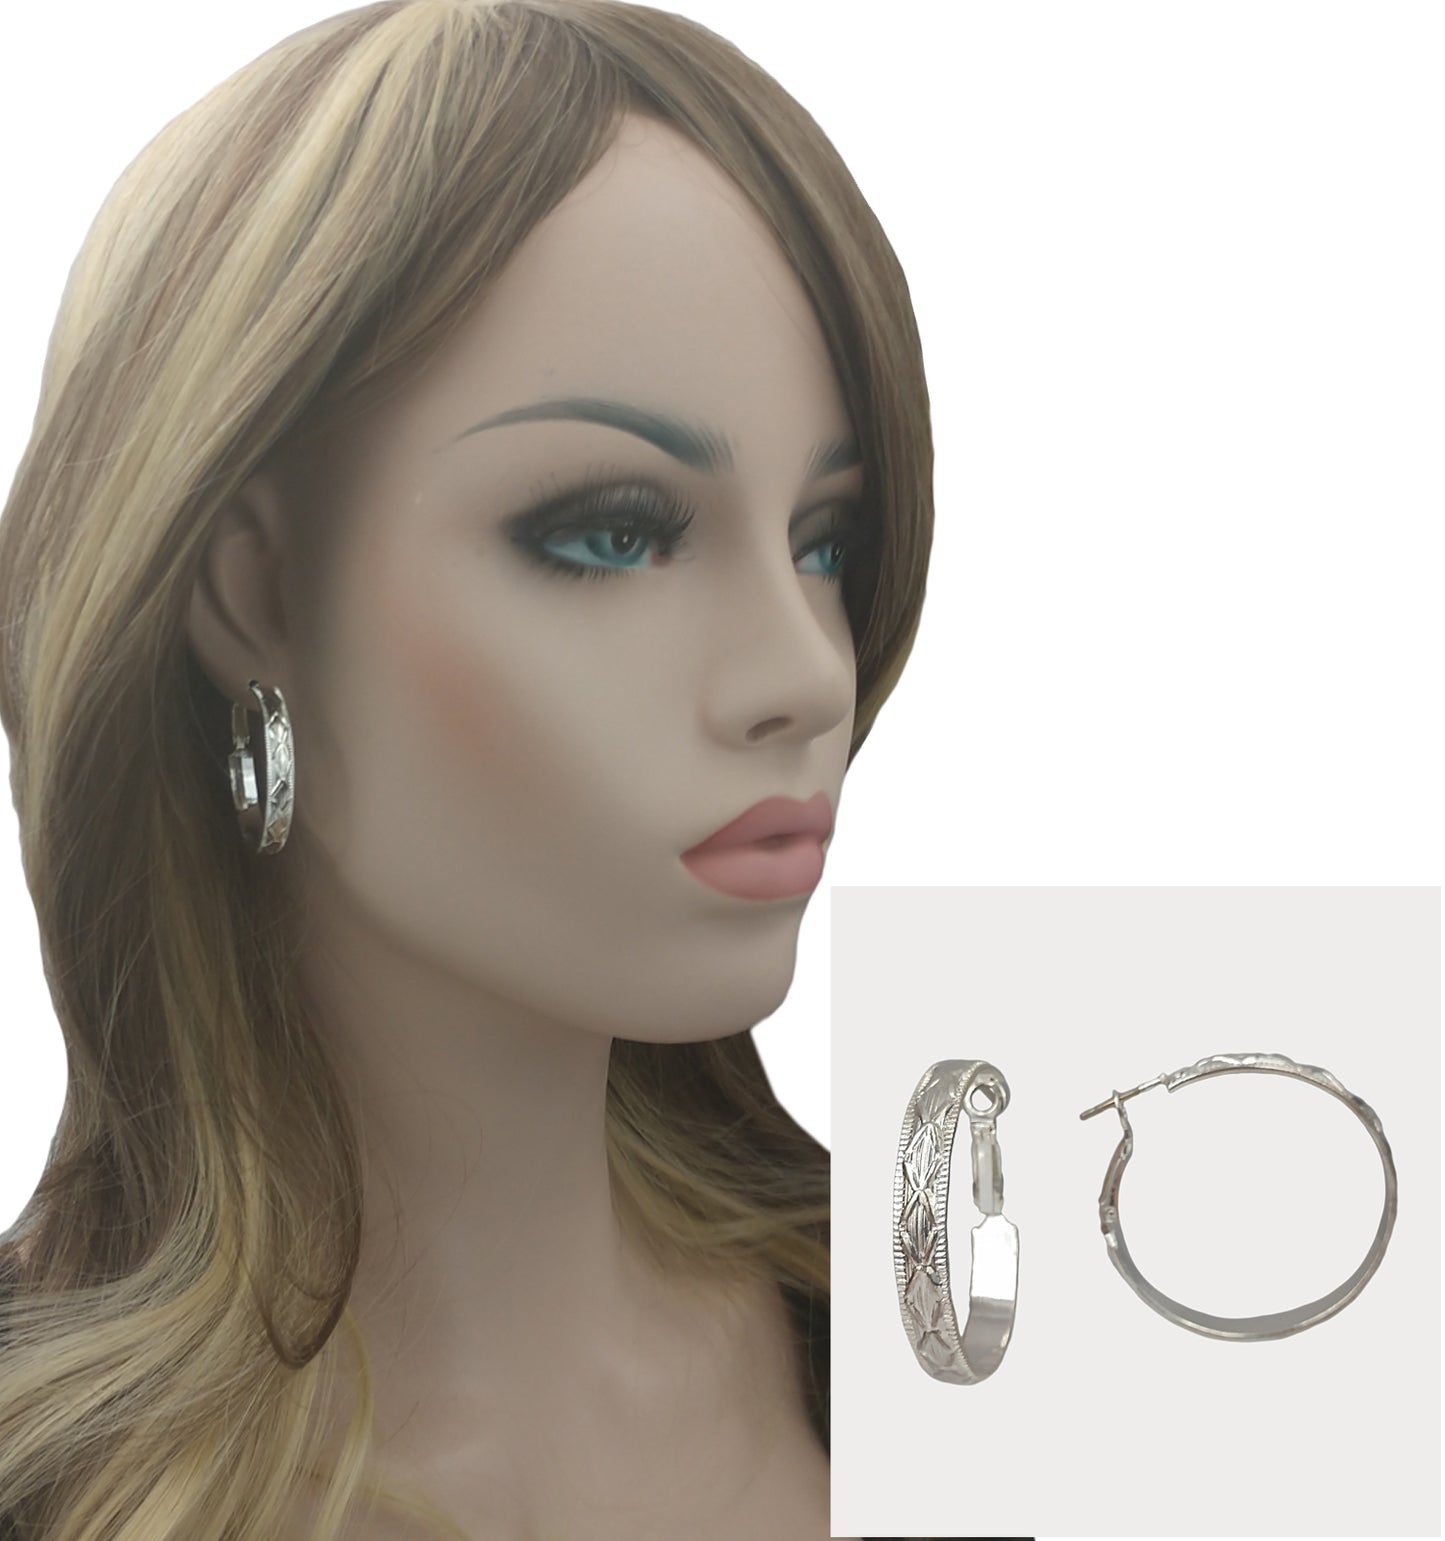 Silver Tone Cross Design Textured Metal Round Hoop Earrings Pierced 1 3/8"